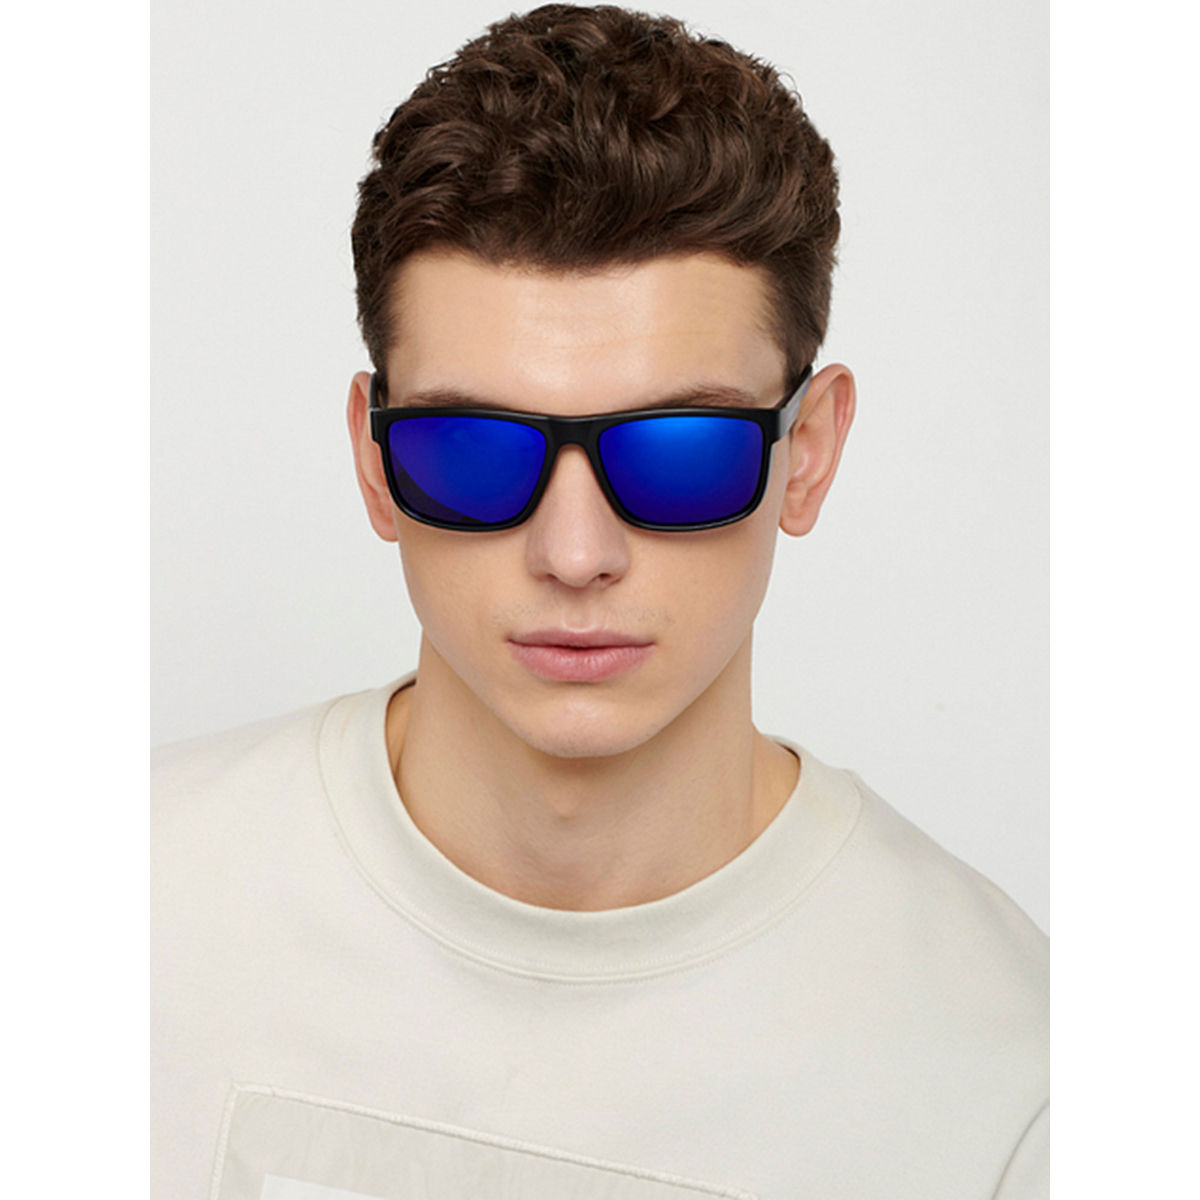 Blue Sports Full Rim Unisex Sunglasses by Vincent Chase Polarized-149135 –  Lenskart